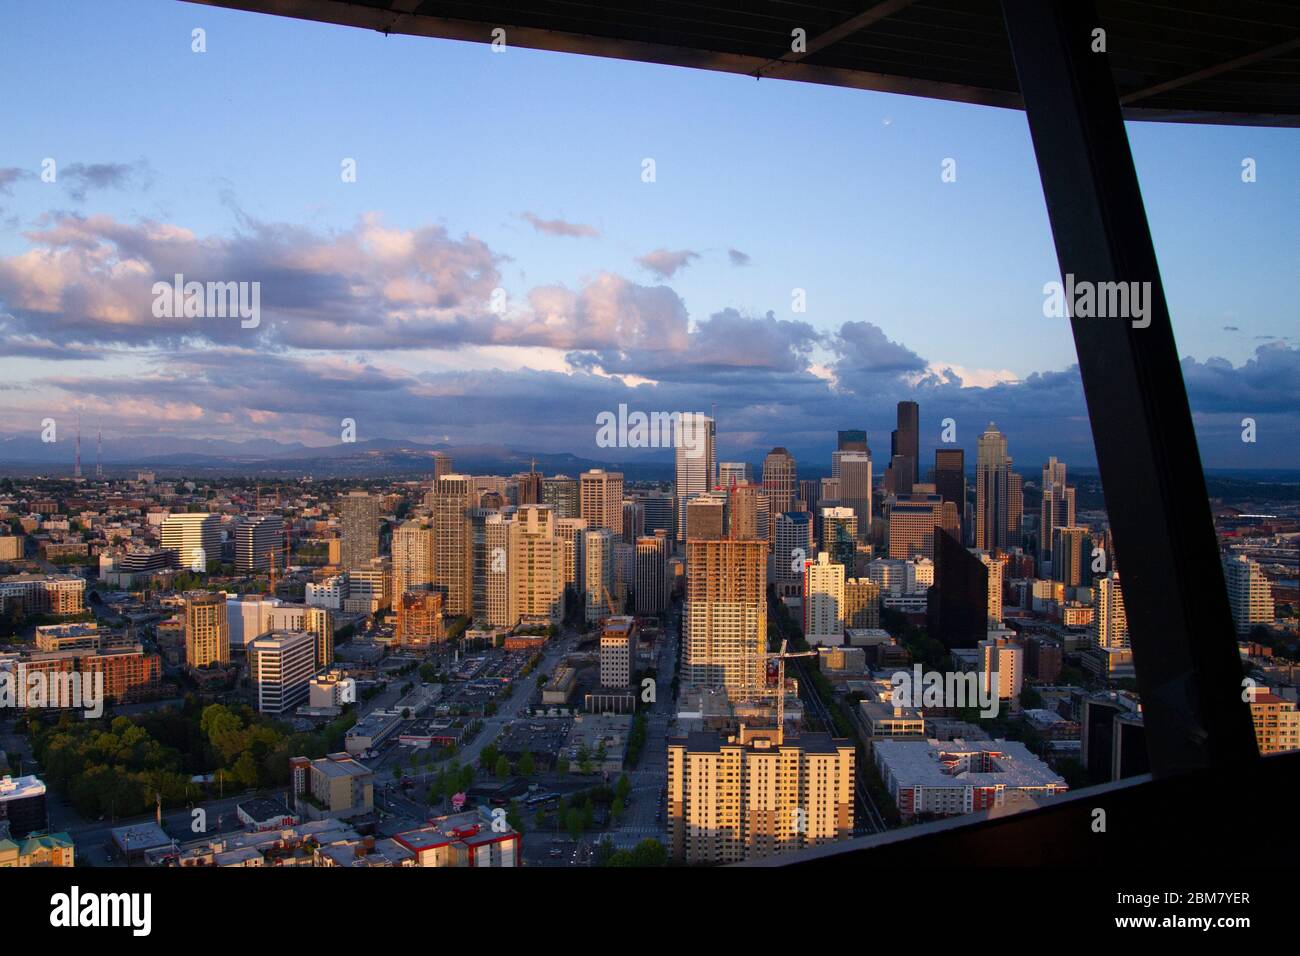 Vista panoramica di Seattle dallo Space Needle appena prima del tramonto con nuvole scure che si muovono contro un cielo blu Foto Stock